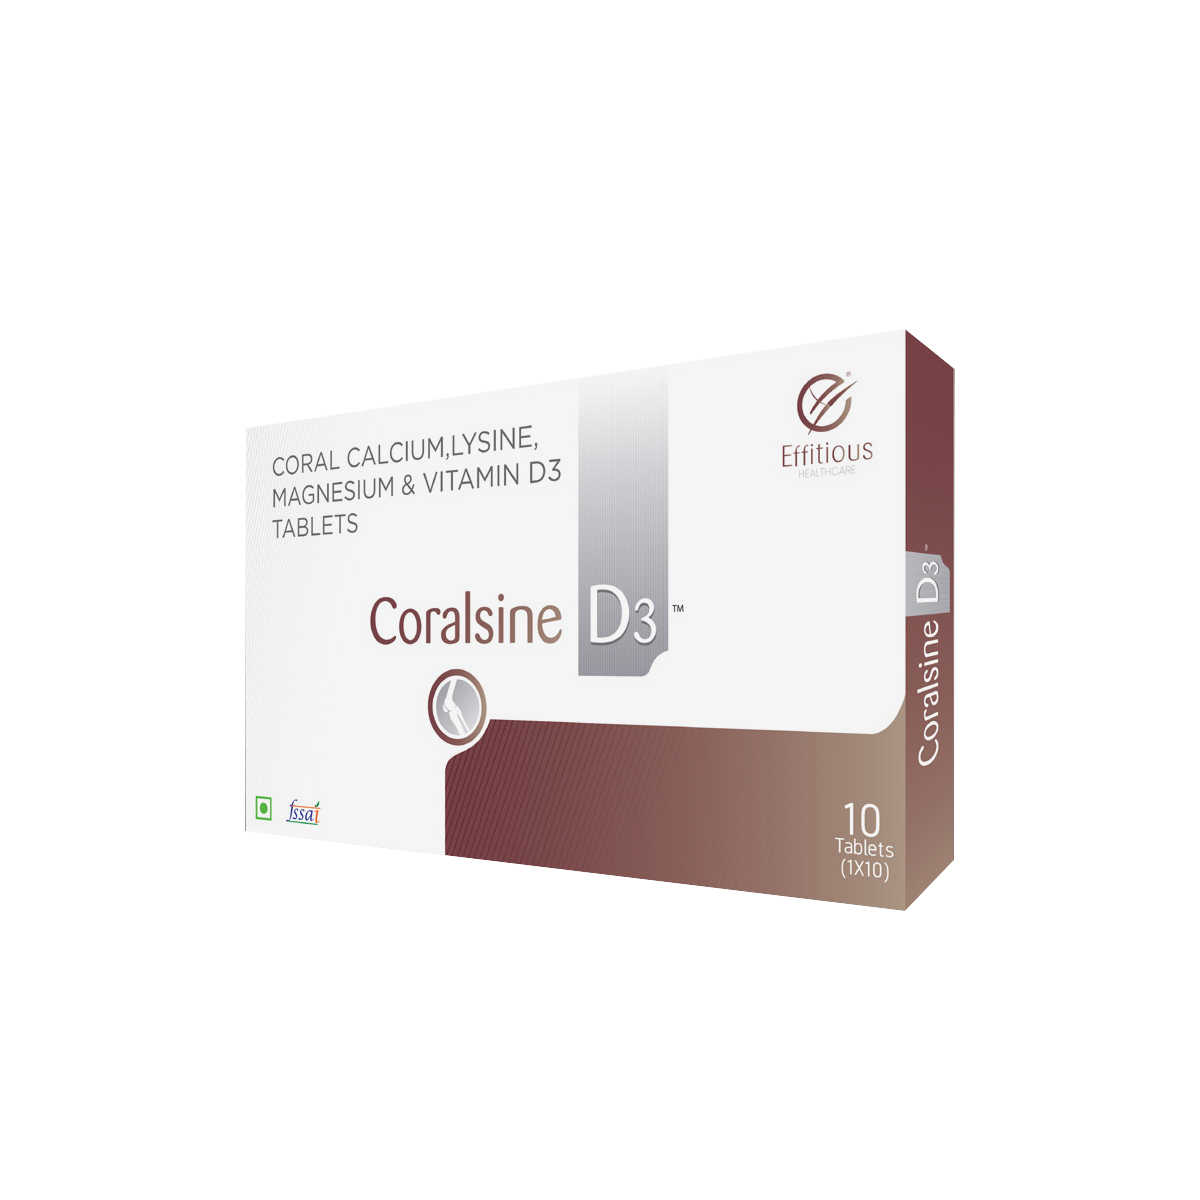 Coralsine D3